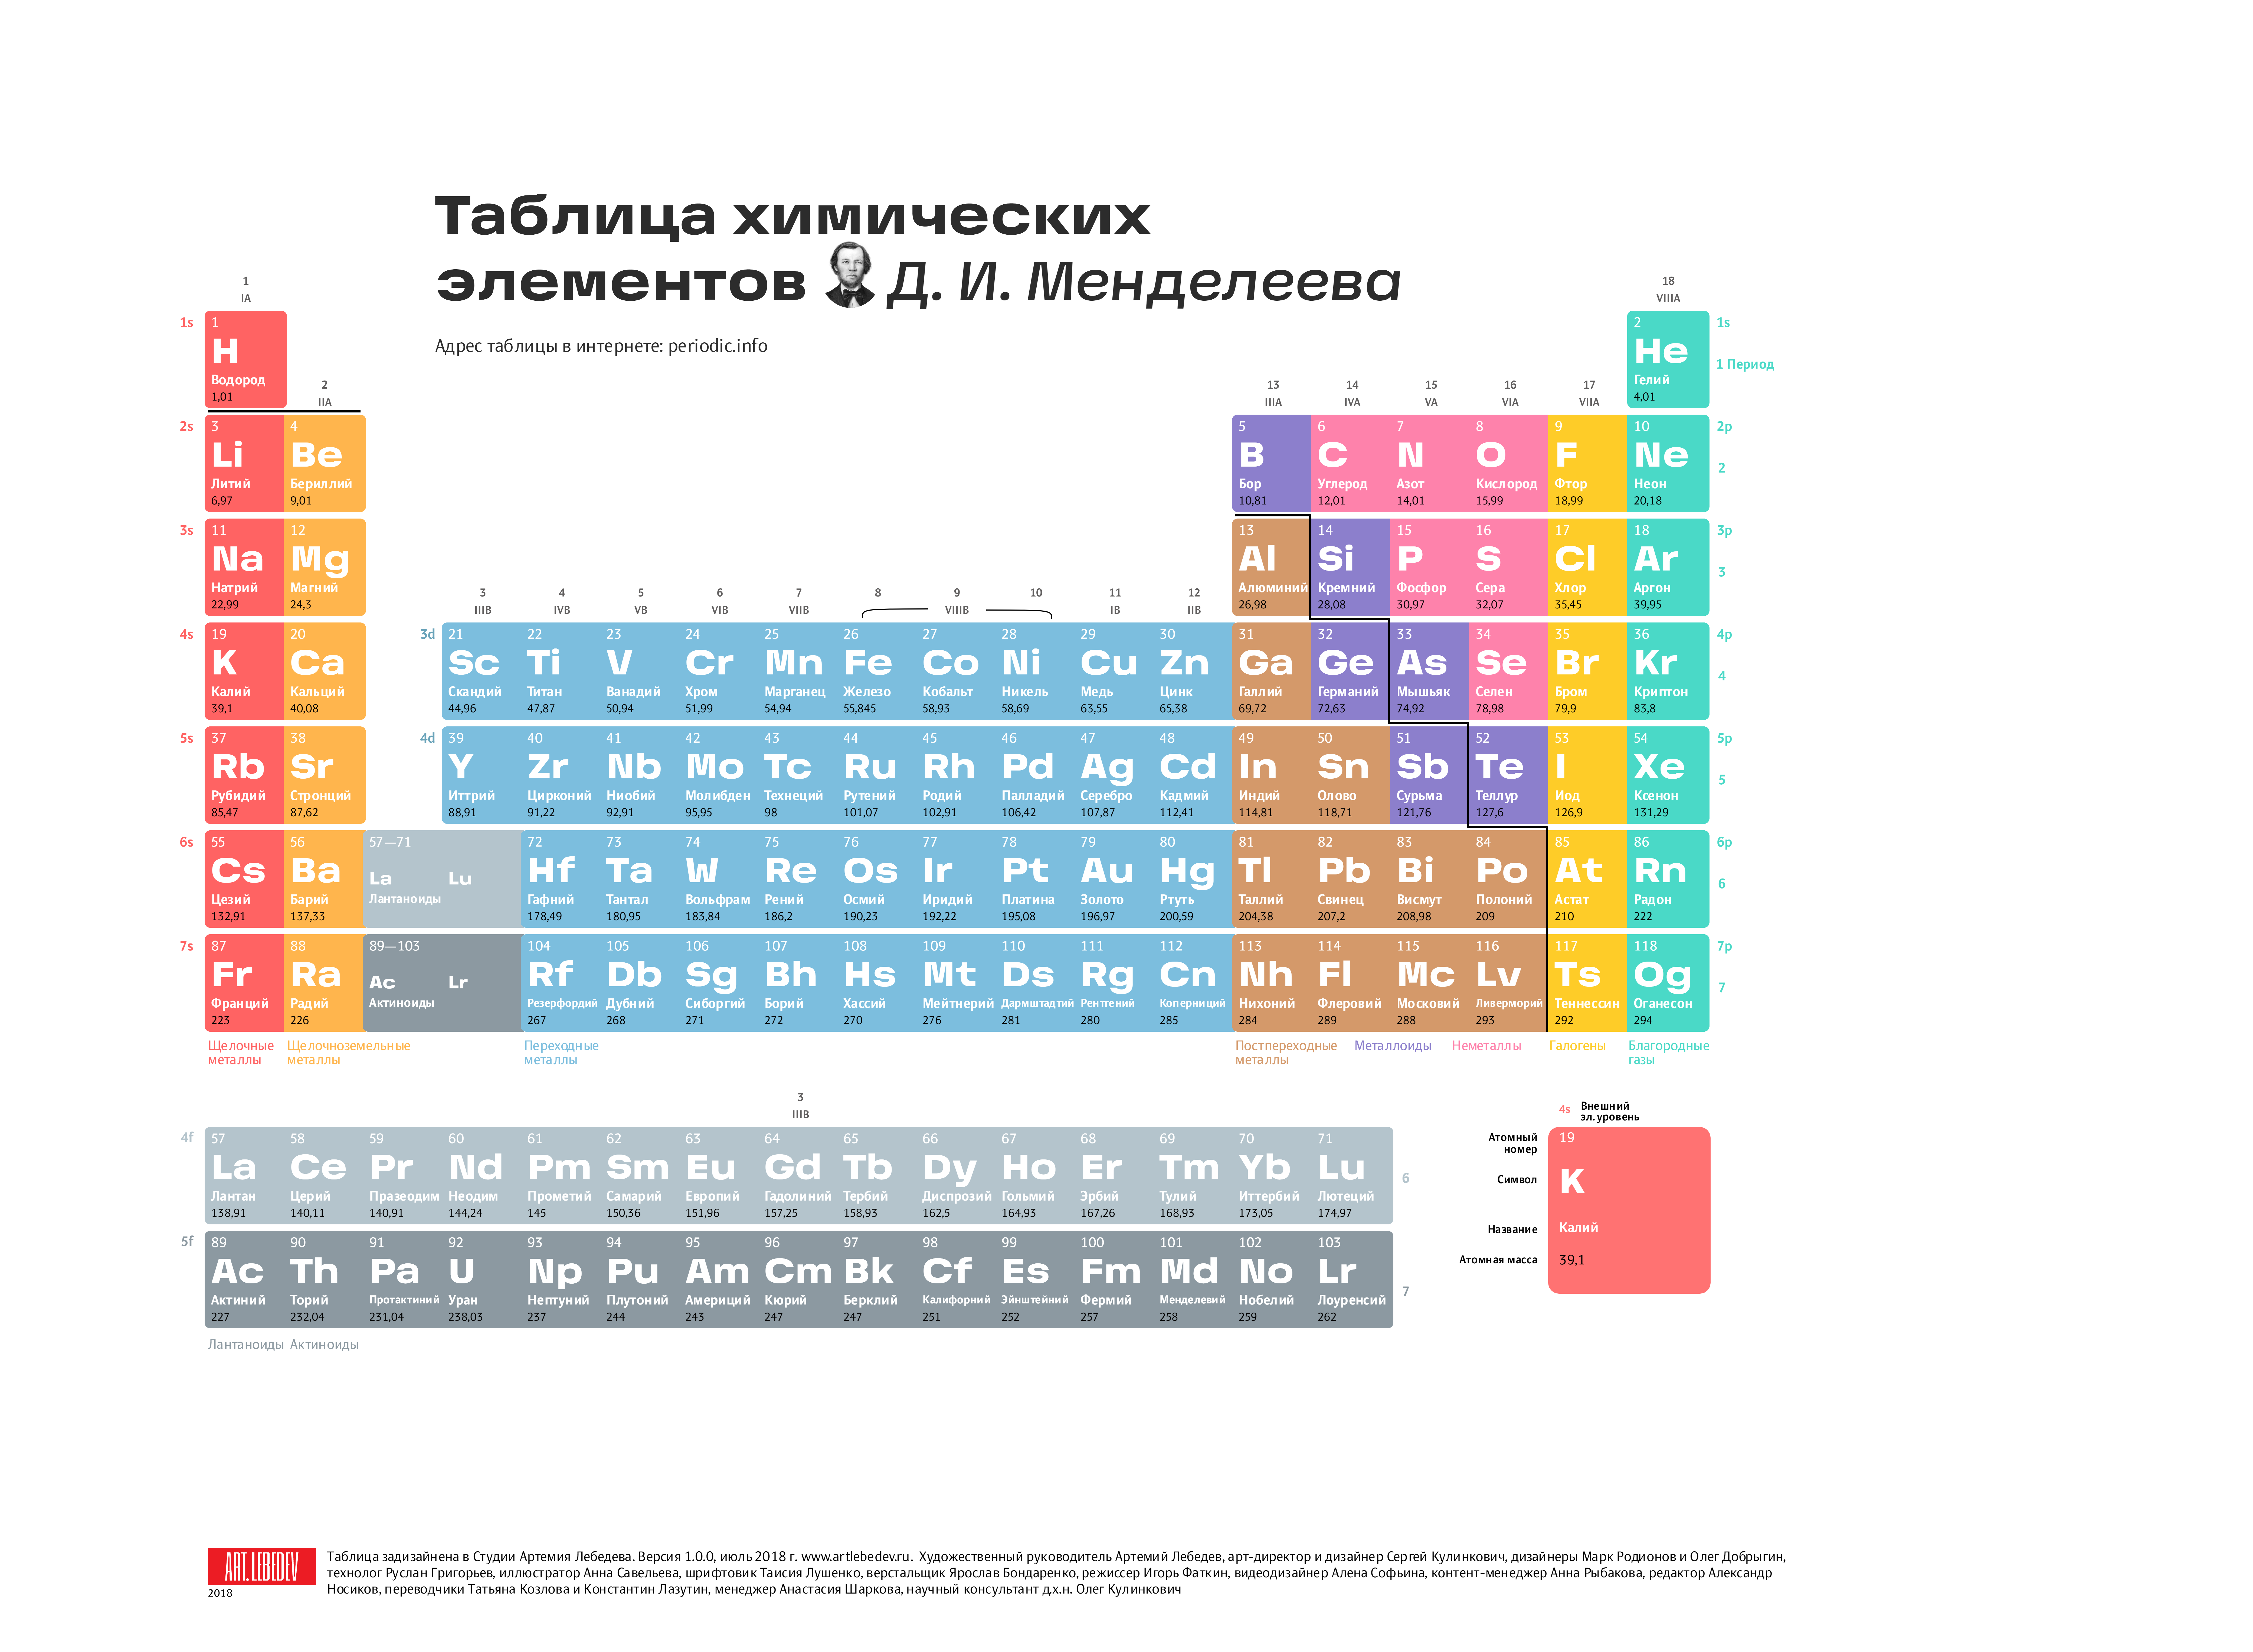 России новый элемент. Современная таблица Менделеева 118 элементов. Первые 20 элементов таблицы Менделеева. Химия просто таблица Менделеева 2.0. Первые 18 элементов таблицы Менделеева.